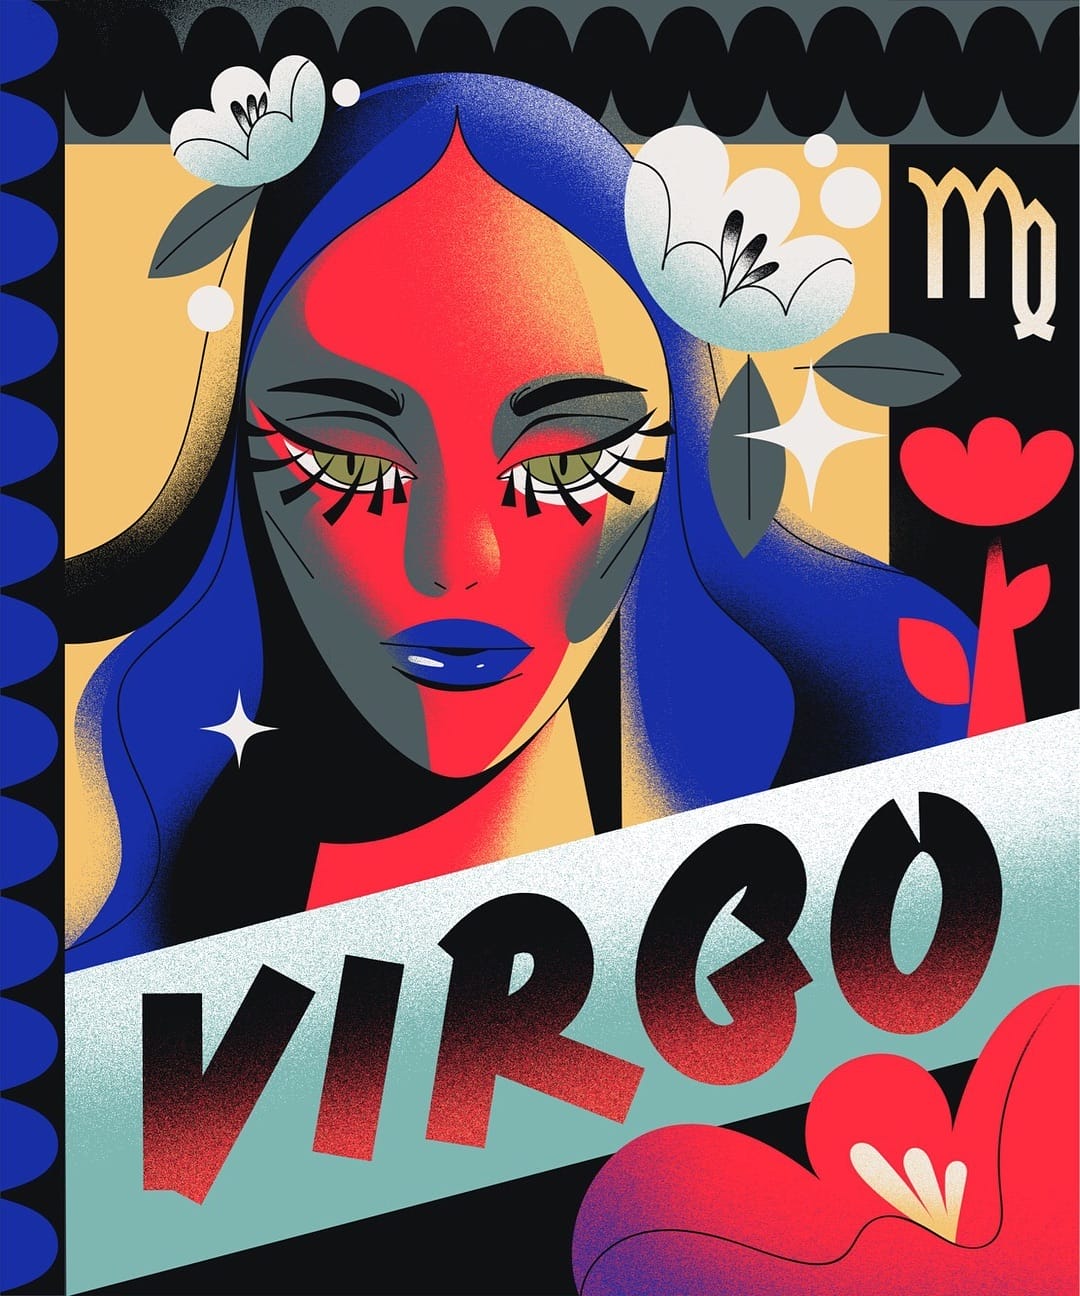 Femme colorée avec le mot "Virgo" inscrit devant